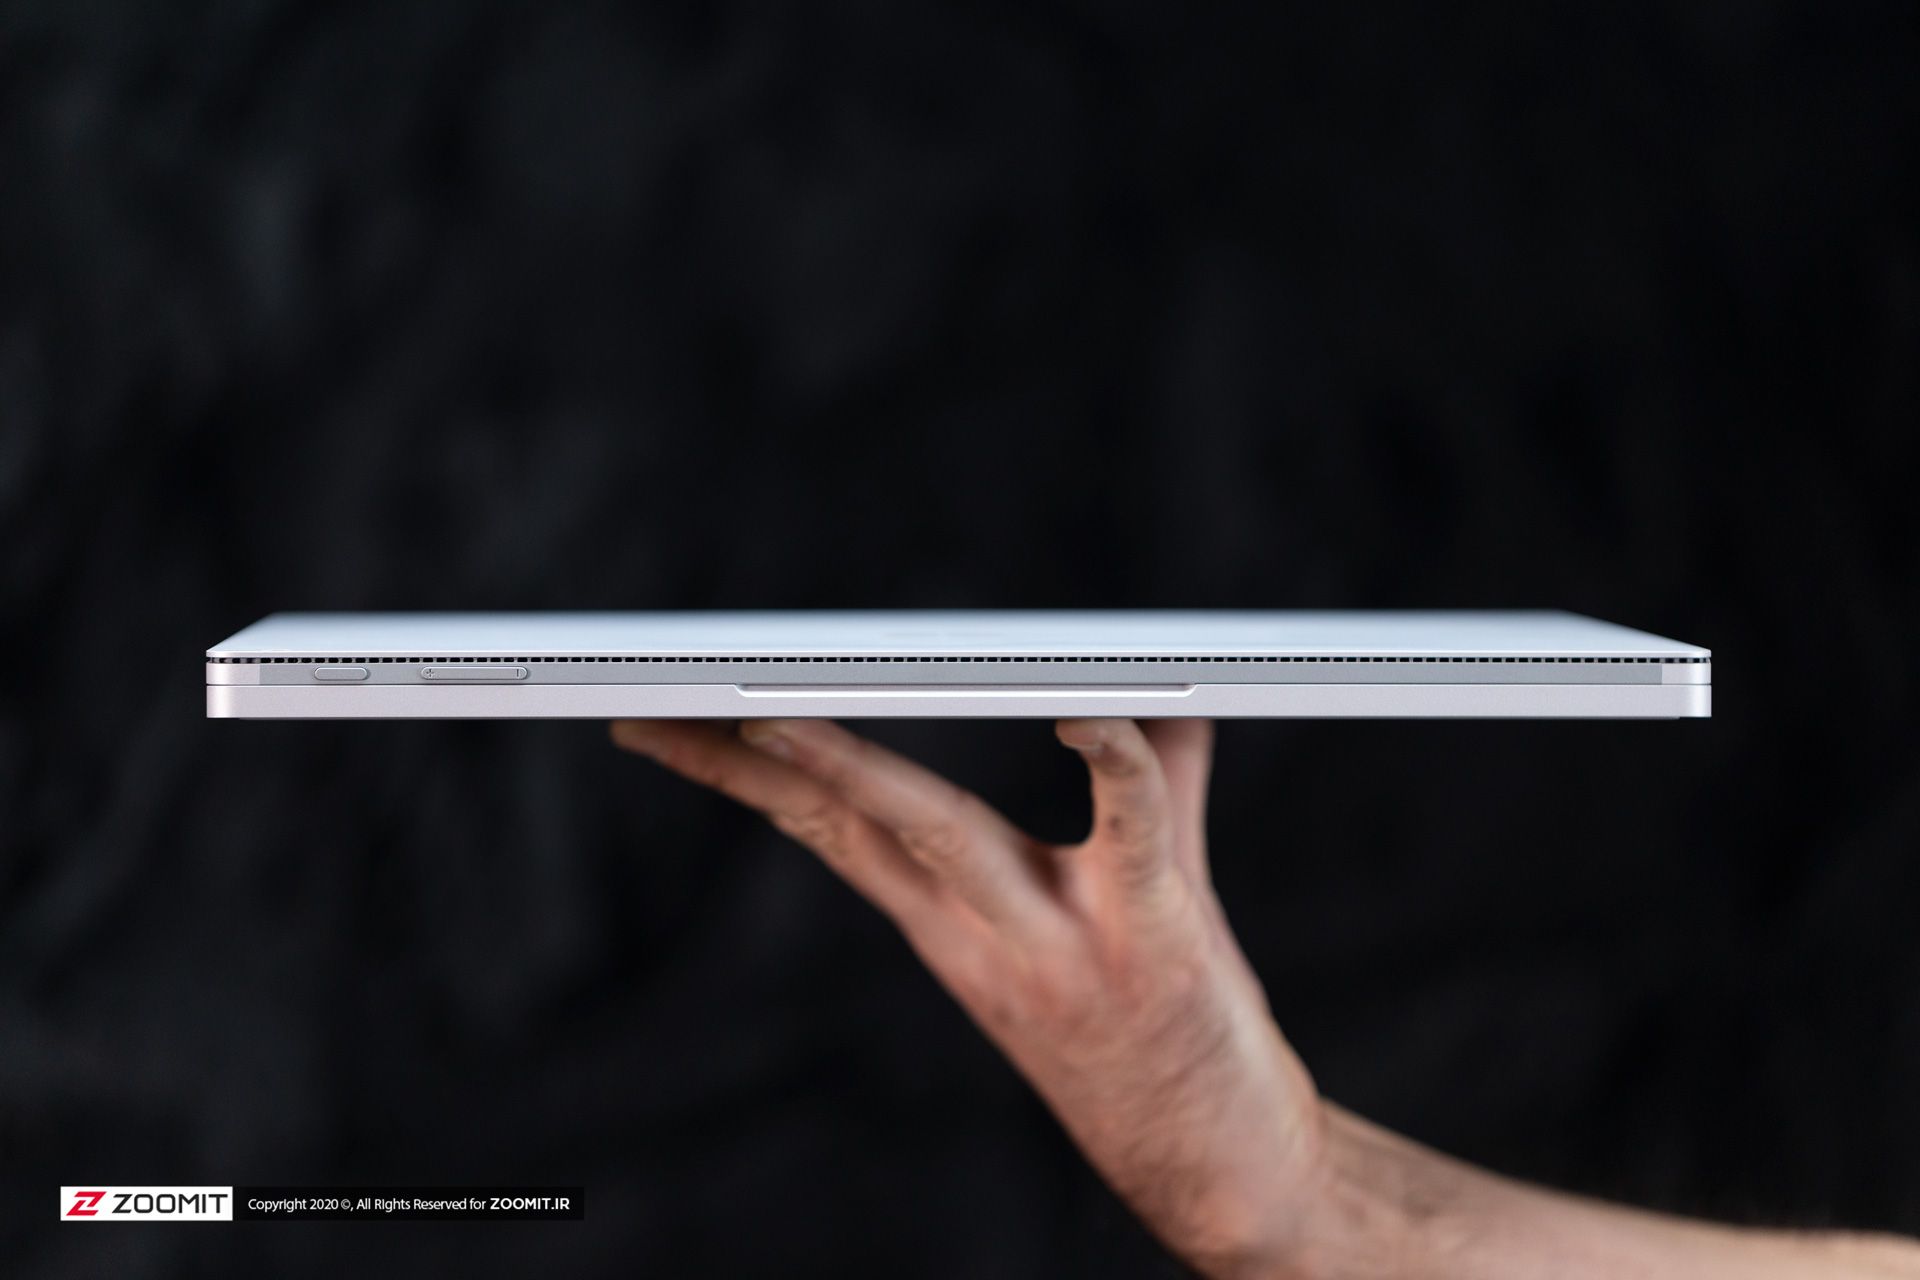 مرجع متخصصين ايران سرفيس بوك ۳ مايكروسافت / Microsoft Surface Book 3 در حالت بسته